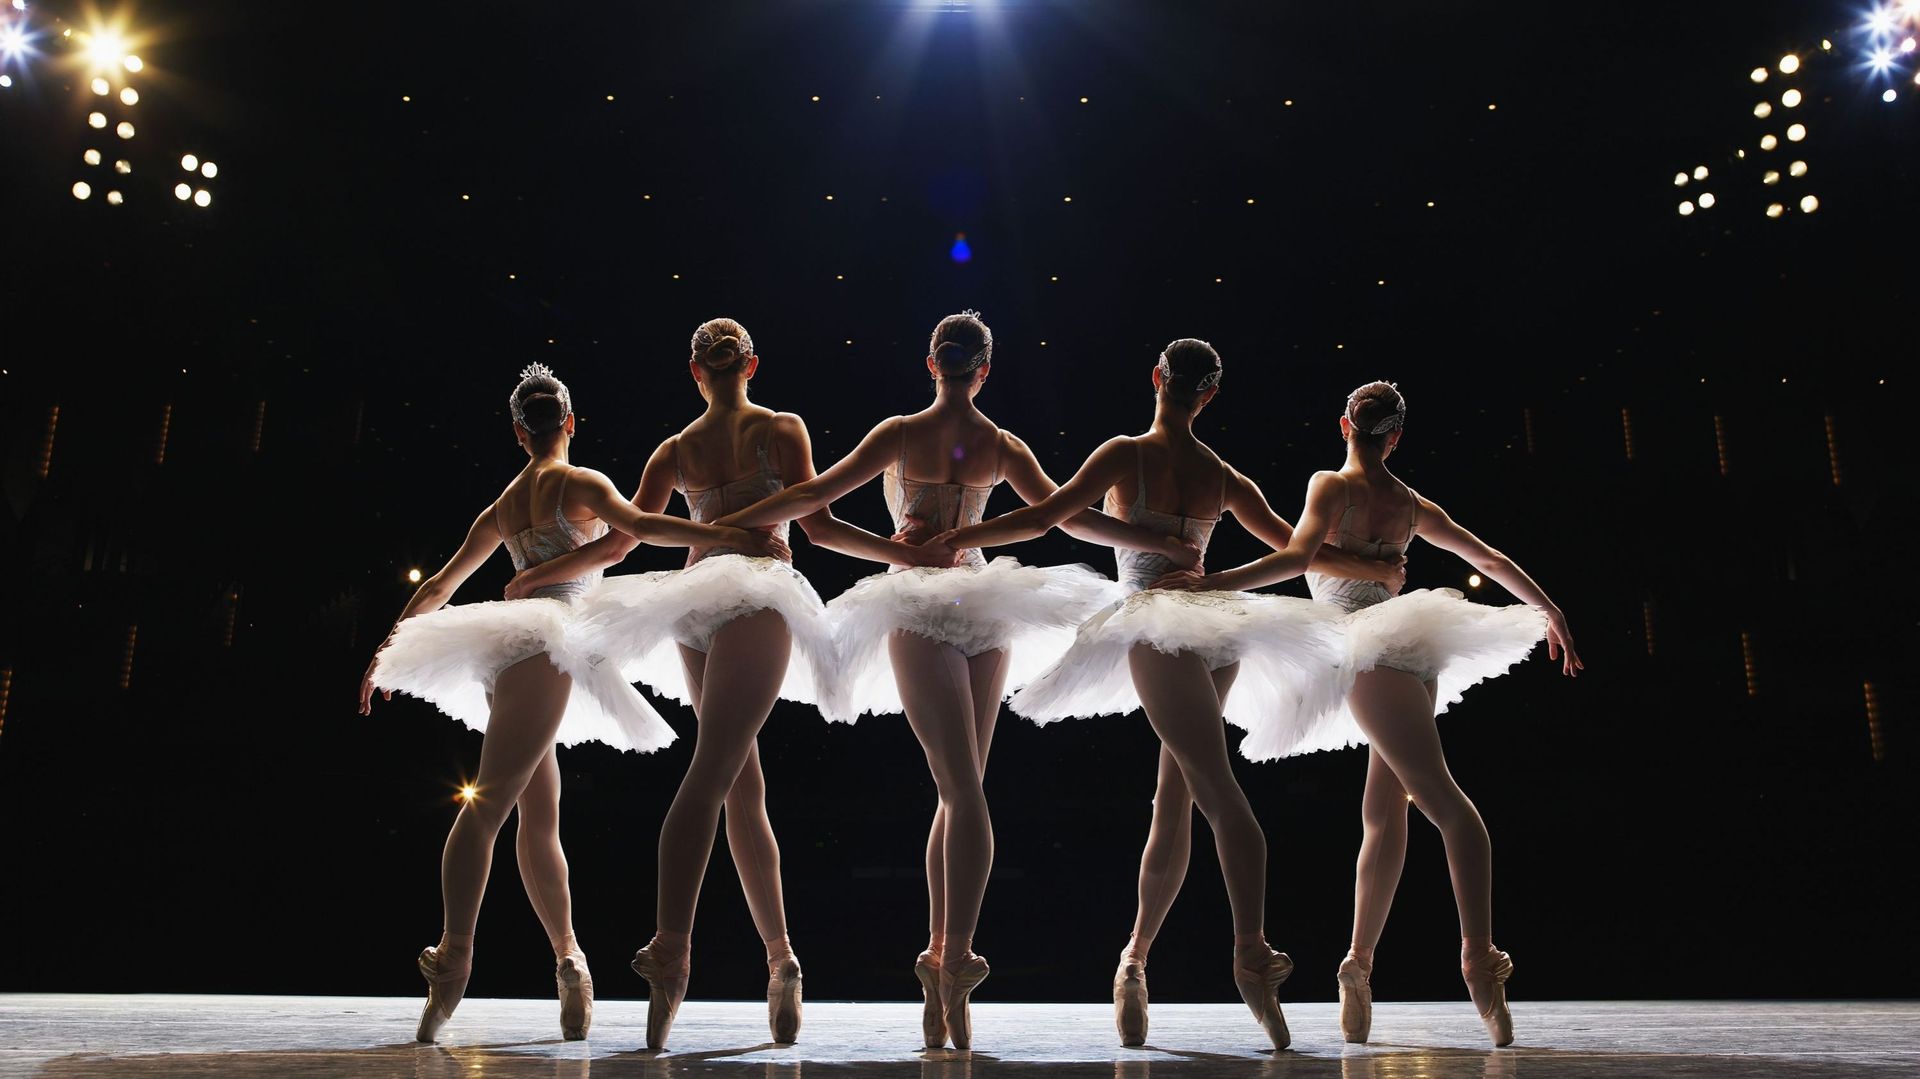 Le Ballet de l’Opéra Paris sera de retour à Garnier à l’automne, avec notamment une création de Sidi Larbi Cherkaoui